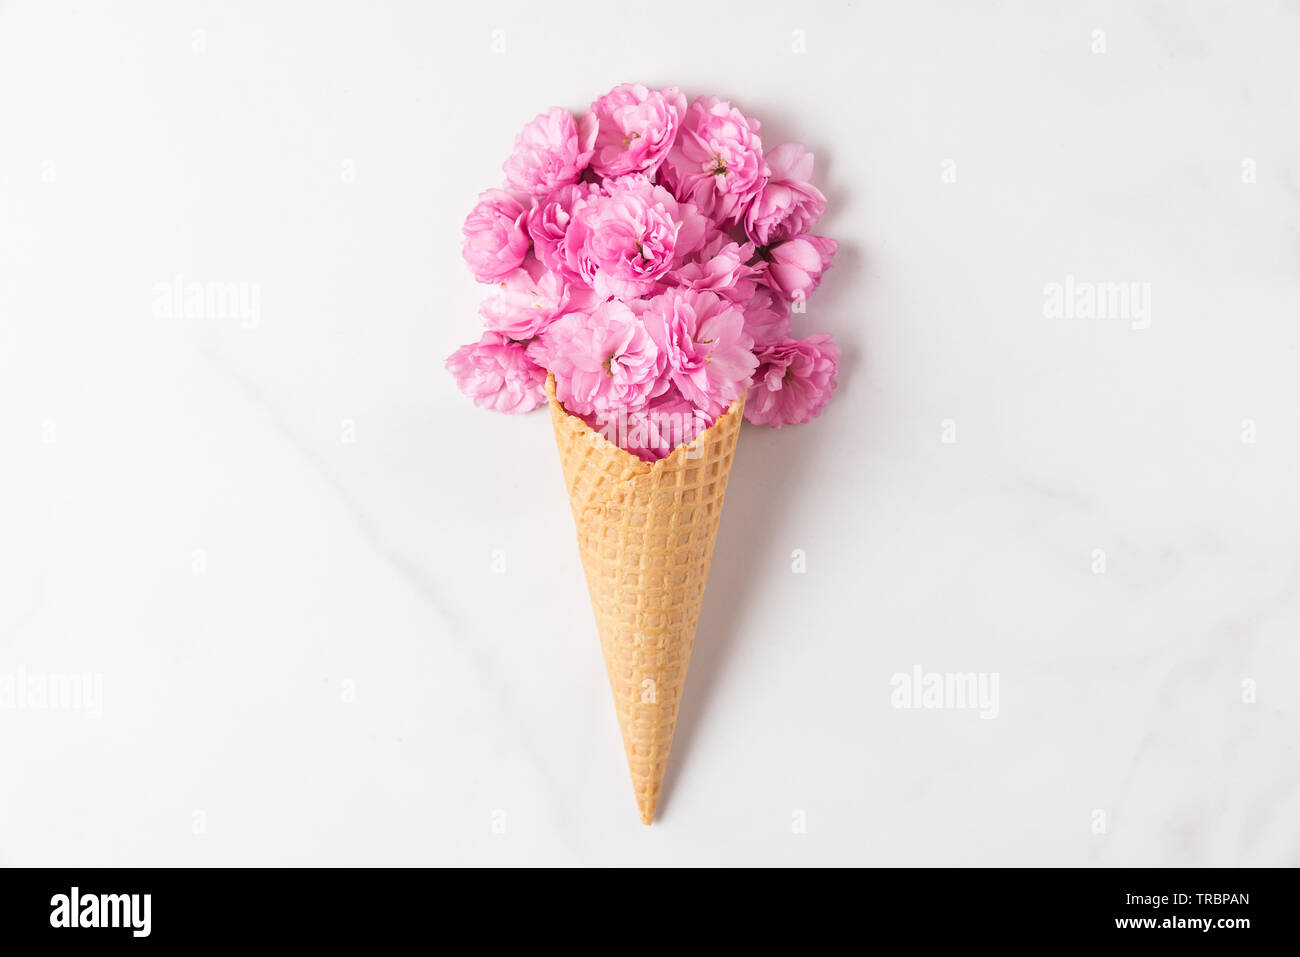 Cornet de crème glacée avec des fleurs de cerisier rose bouquet de fleurs sur fond de marbre blanc. Concept de printemps minimes. Télévision lay. vue d'en haut. fond de mariage Banque D'Images